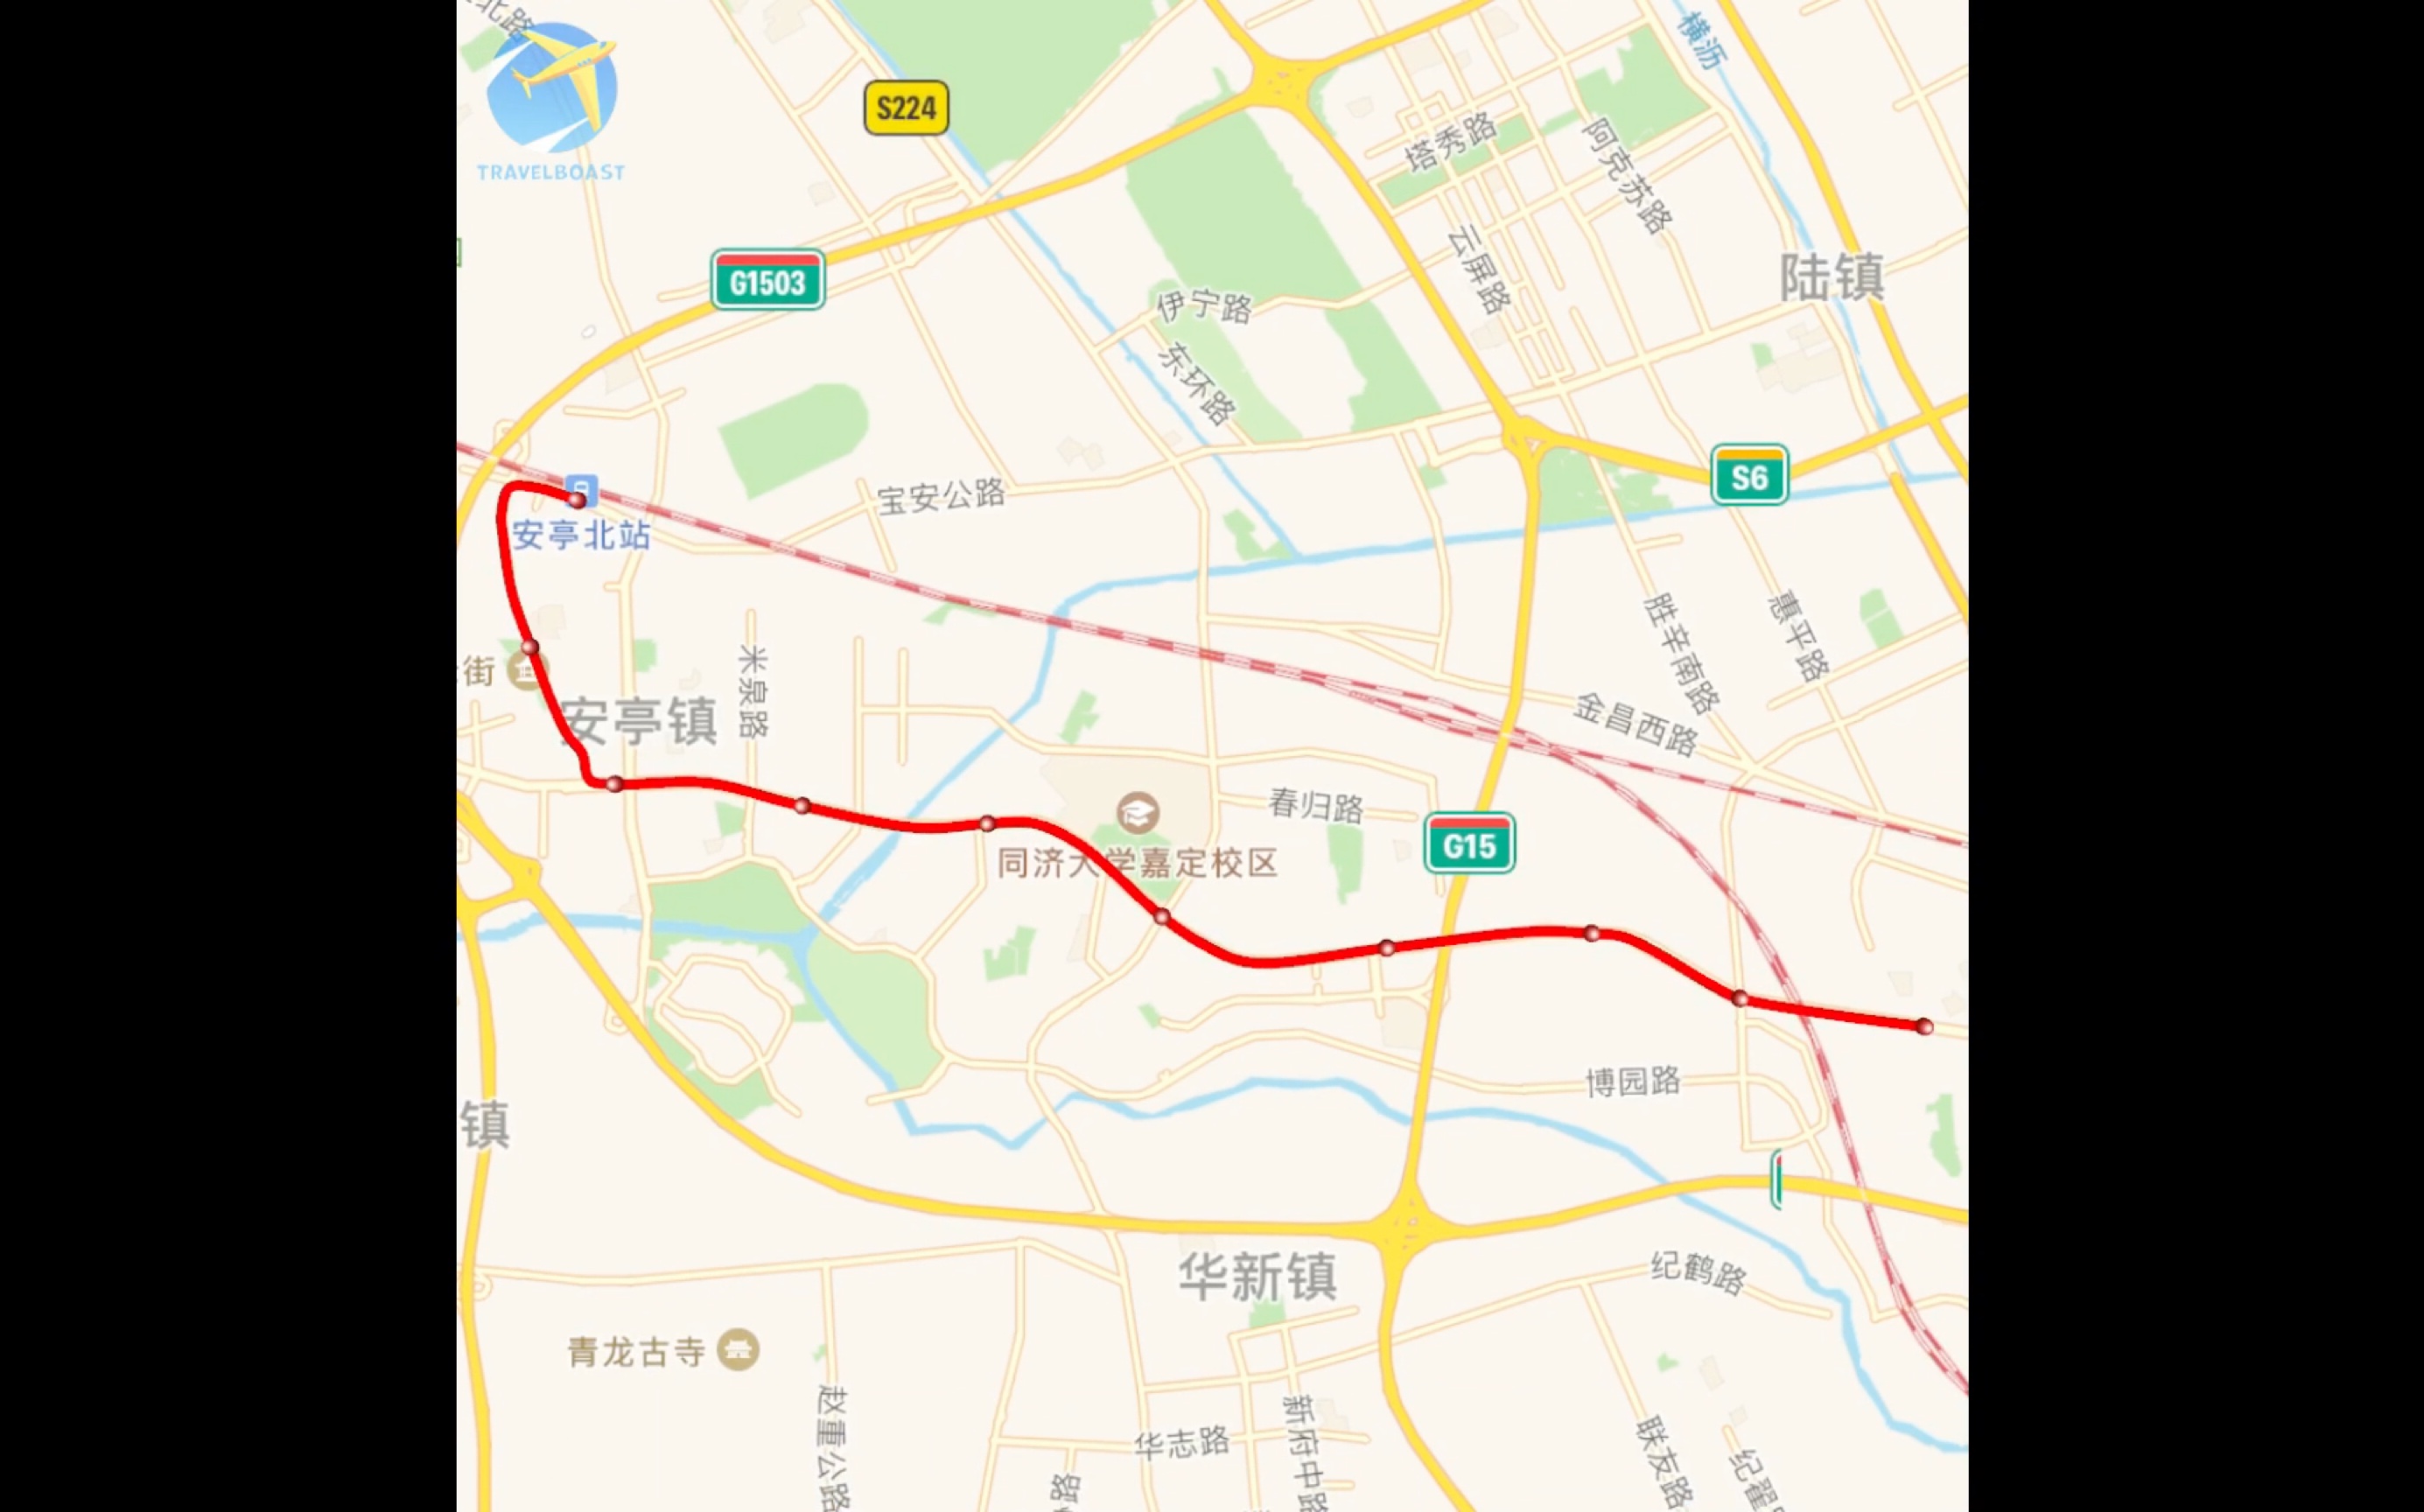 上海14号线地铁延伸图片